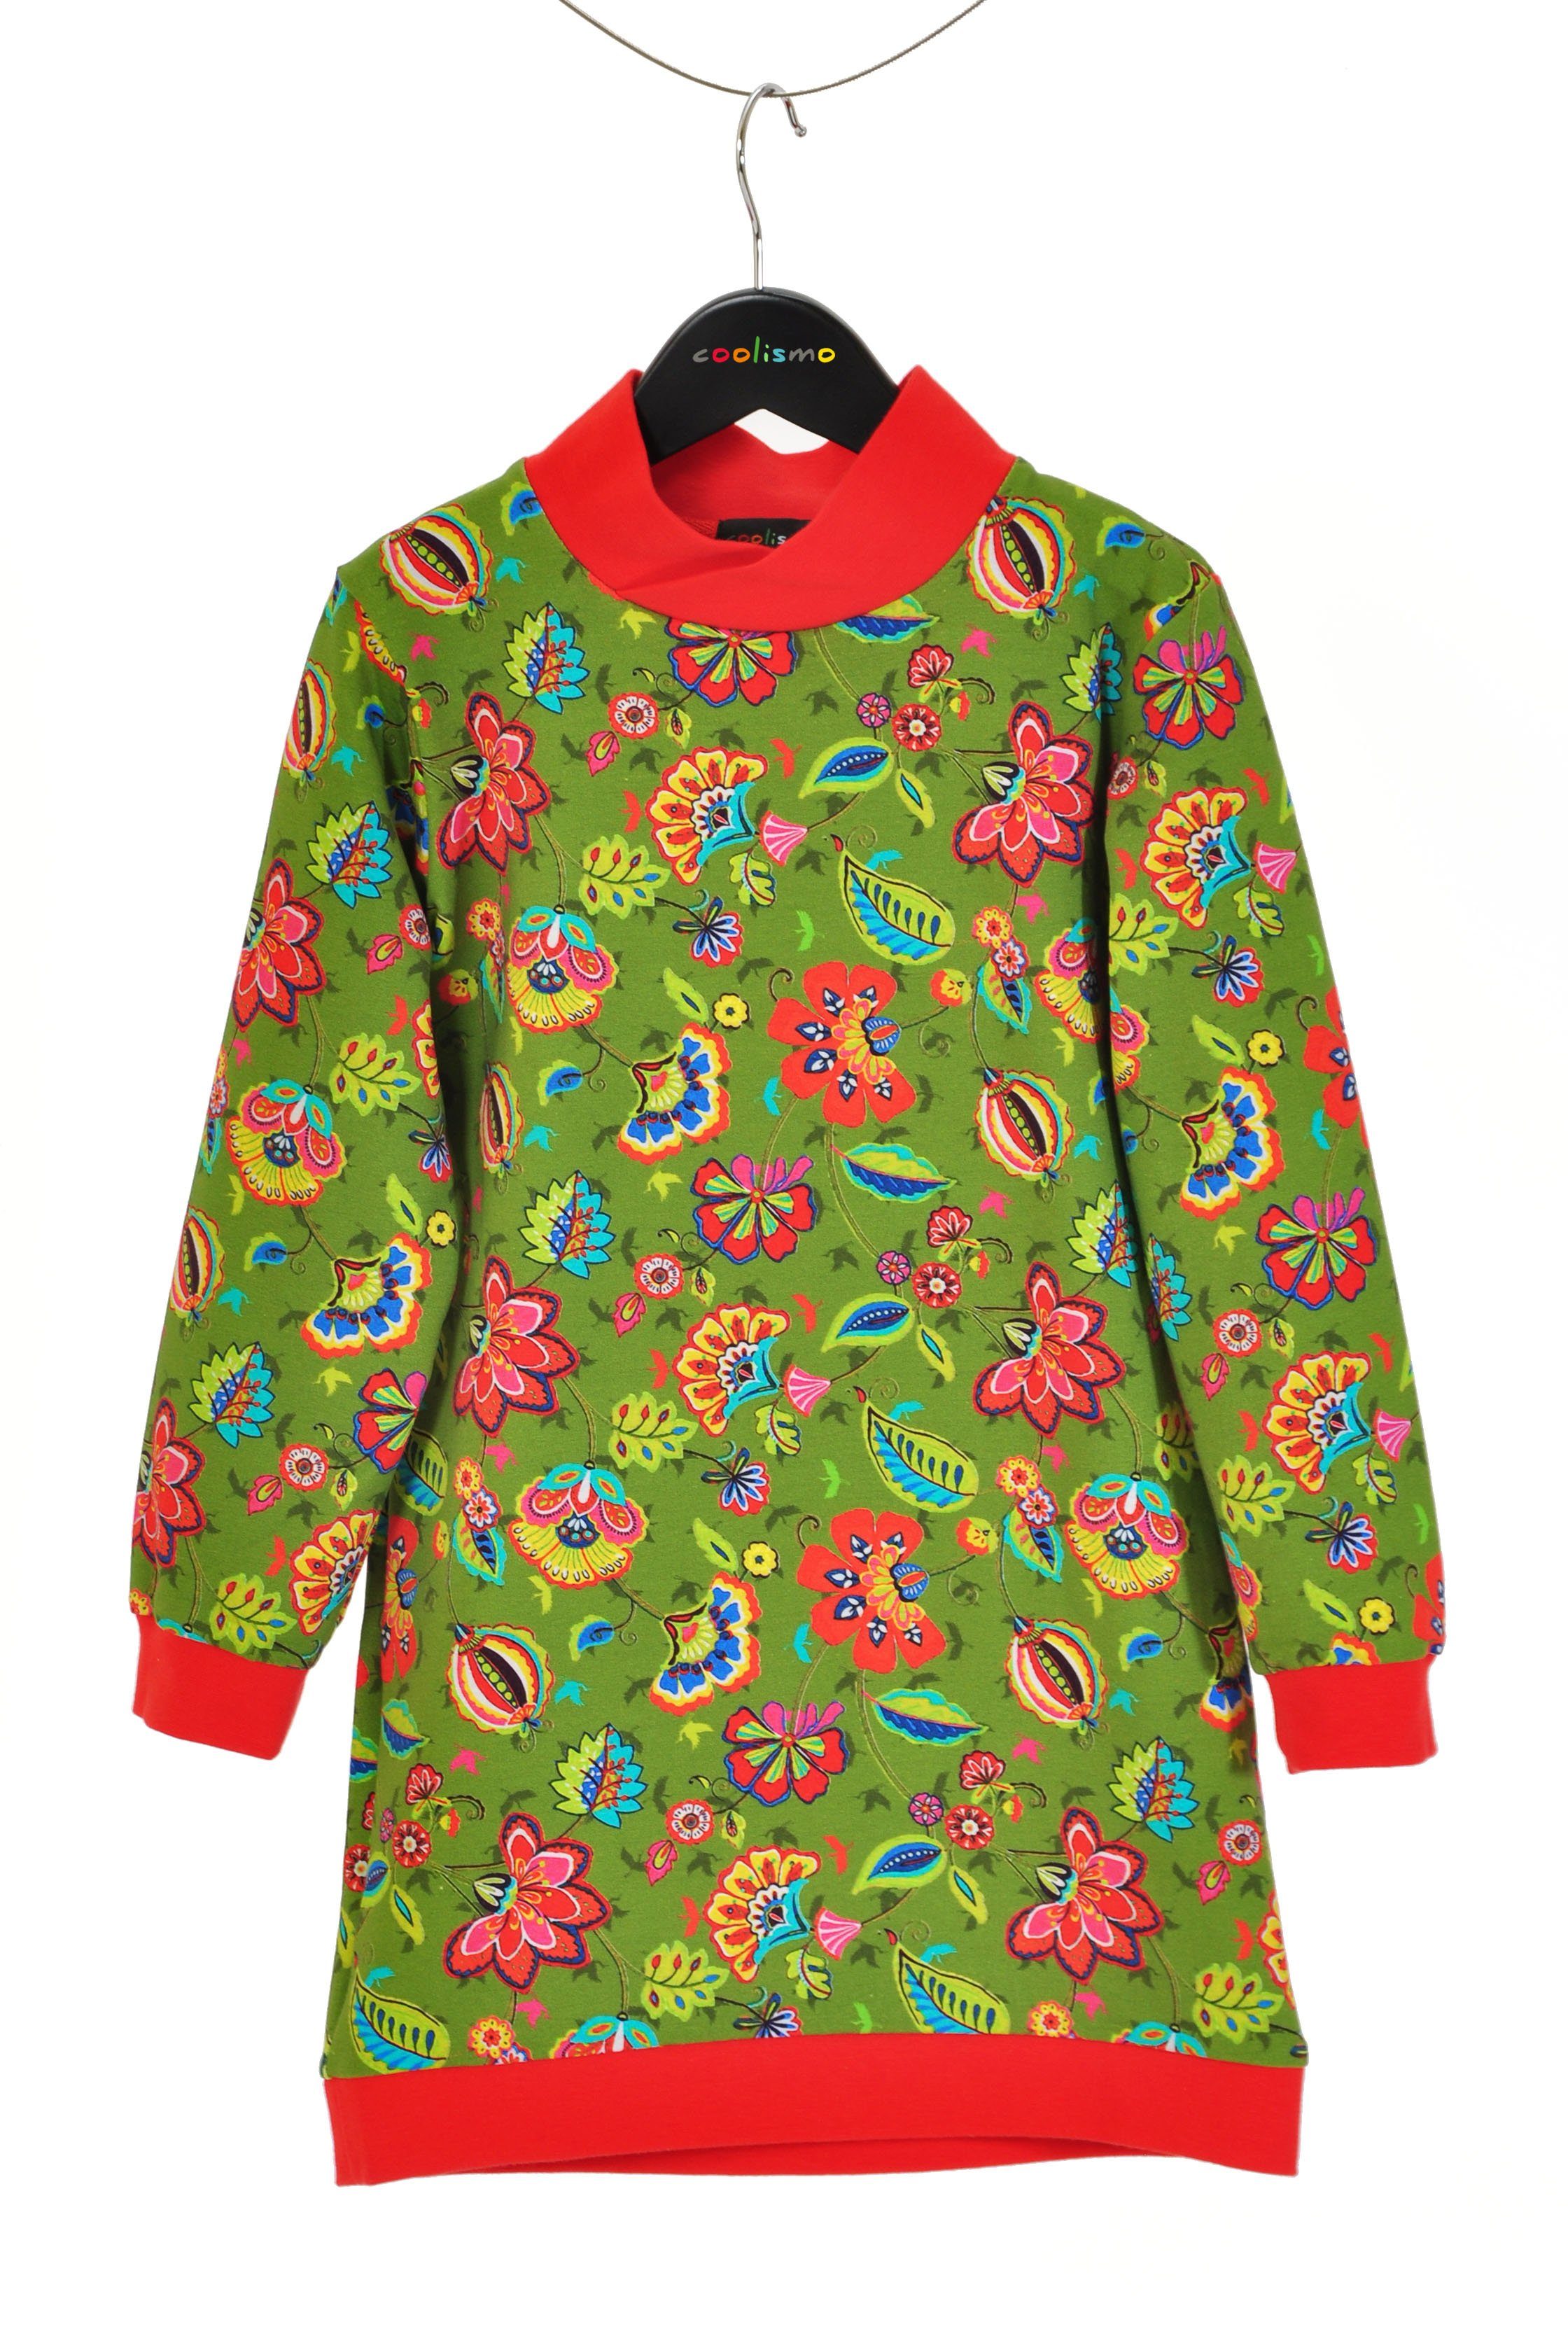 Motivdruck Produktion Blumen mit für coole Sweatkleid coolismo Sweatshirt Mädchen europäische Kleid oliv